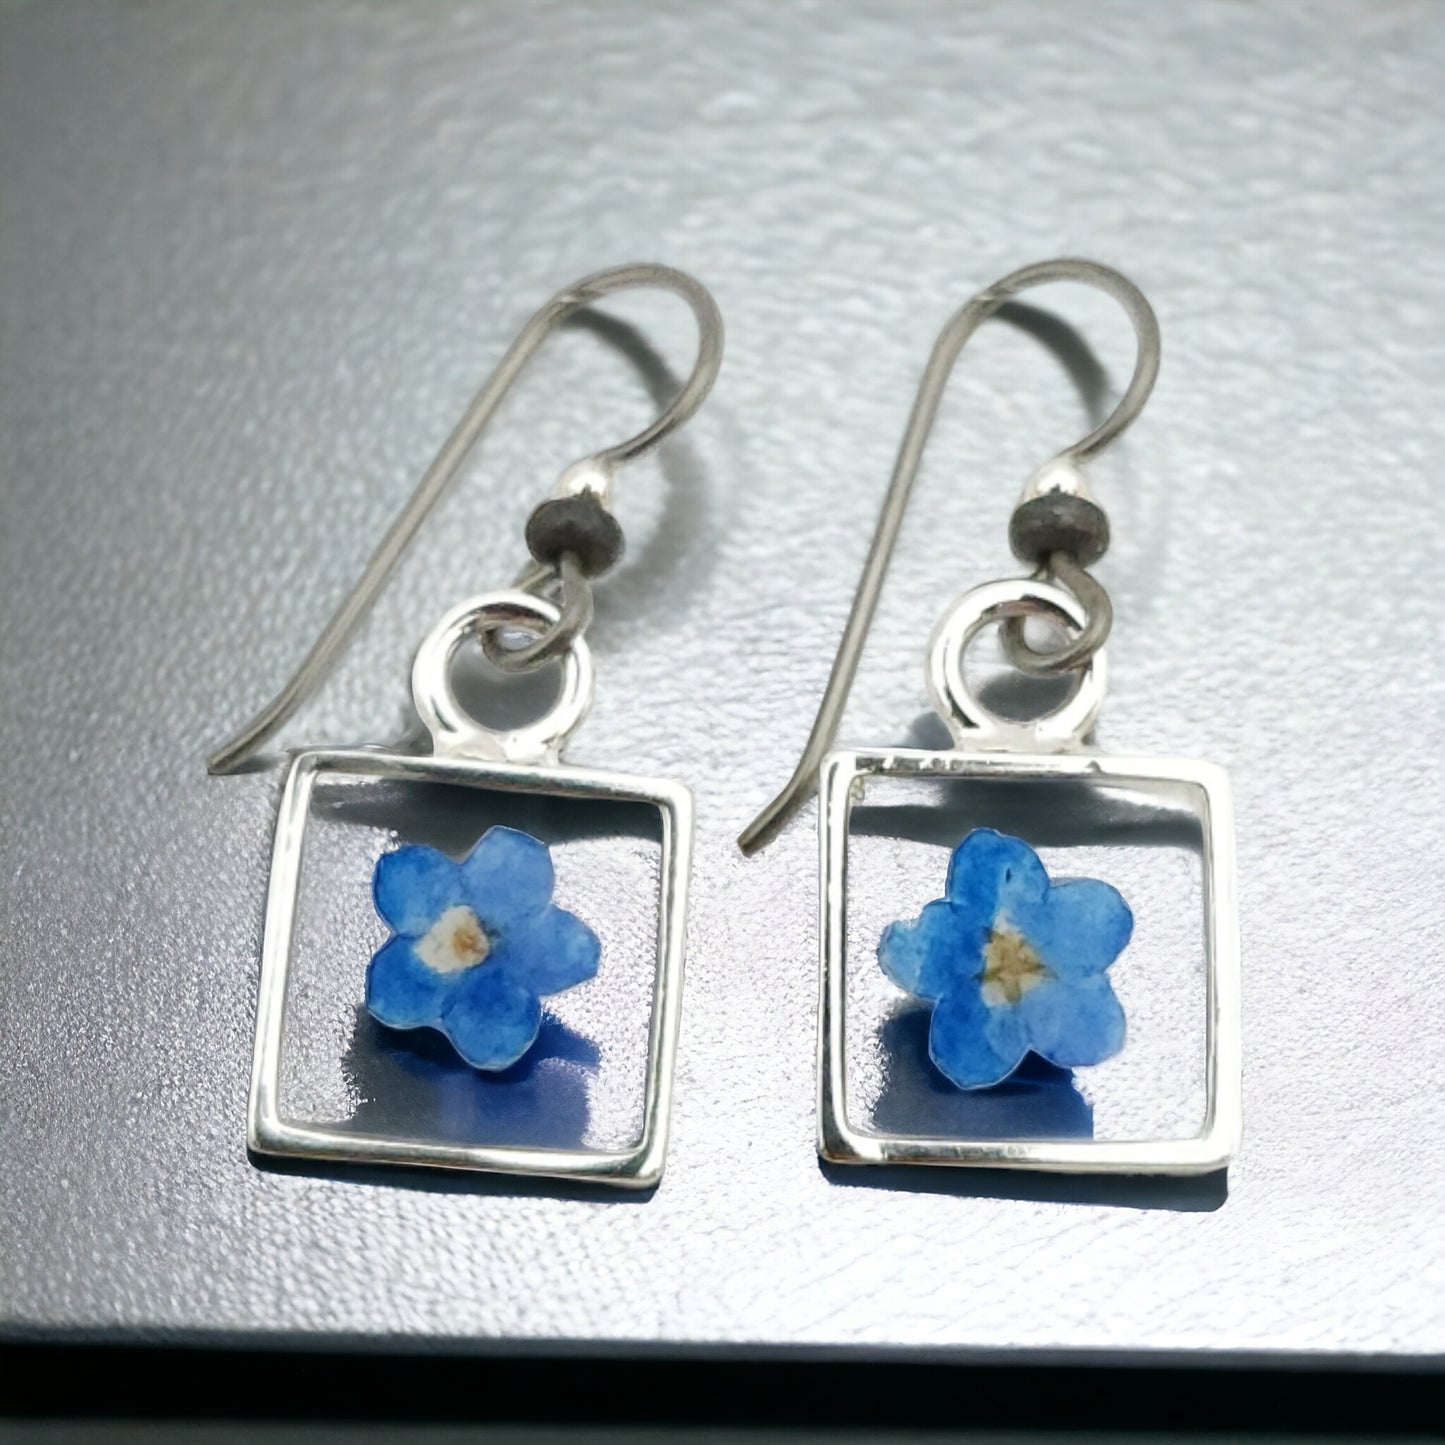 Forget-me-nots Blue Flower Earrings In Silver Bezel